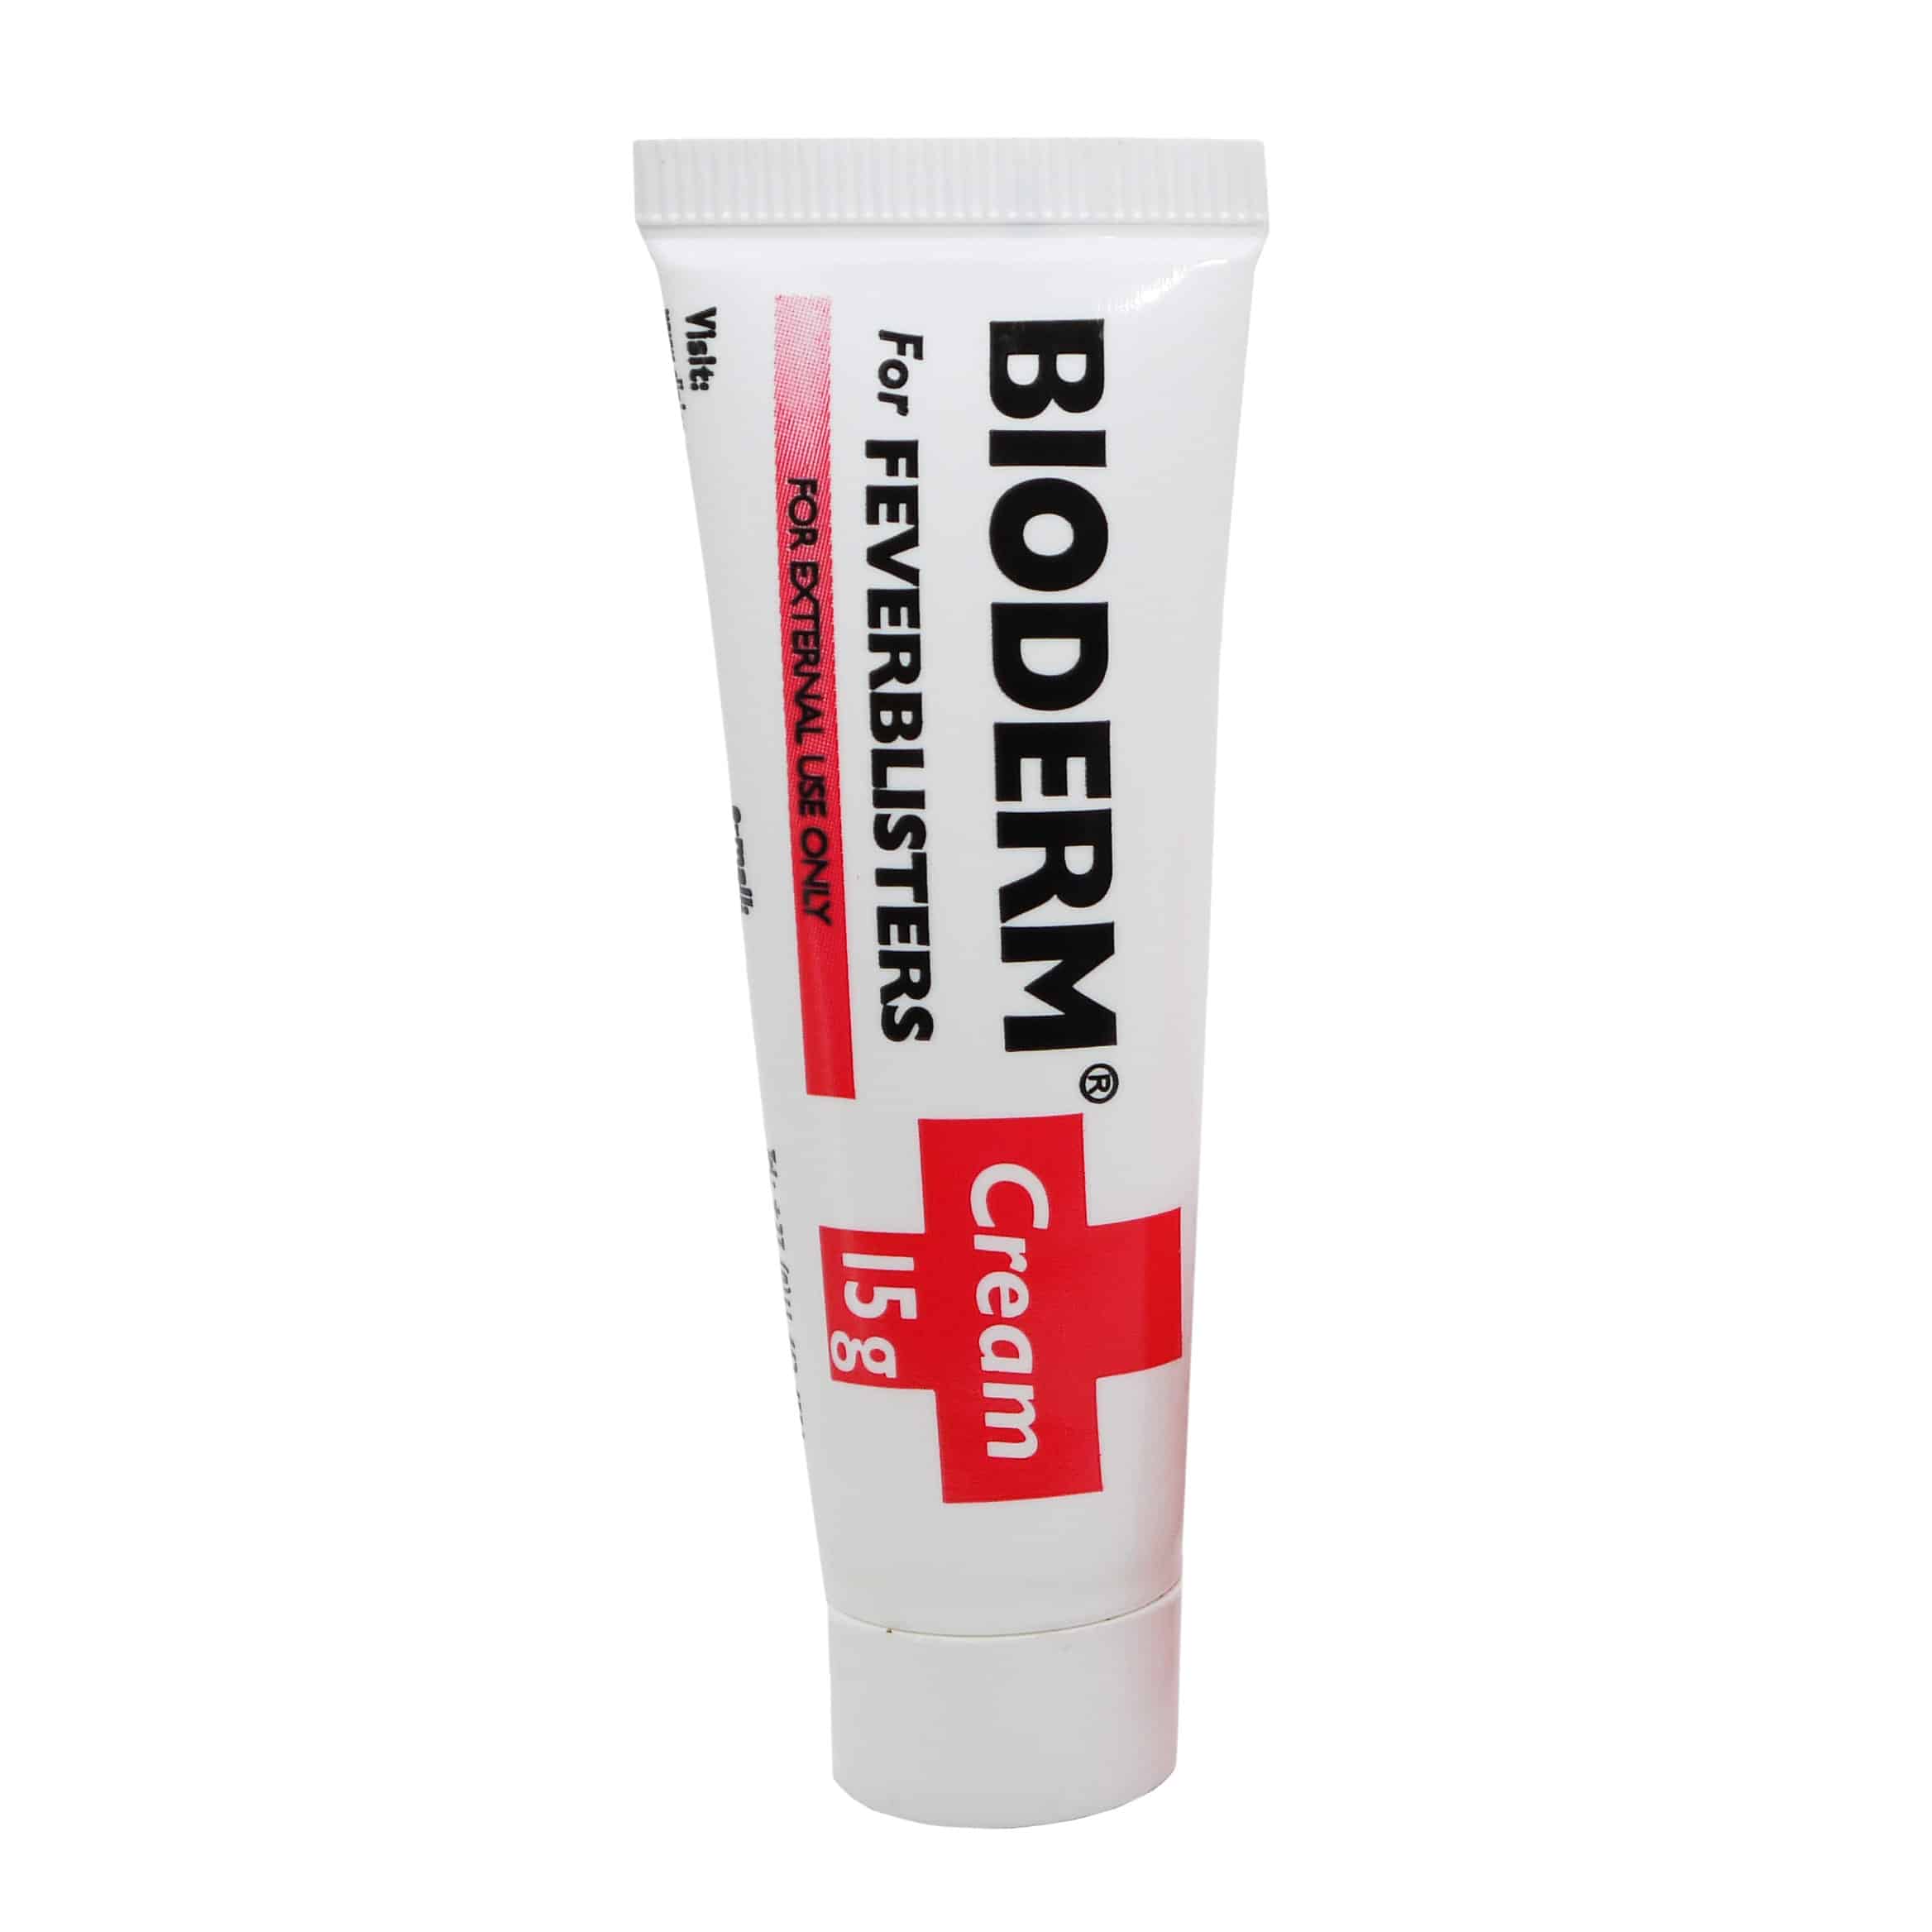 Bioderm Fever Blister Cream